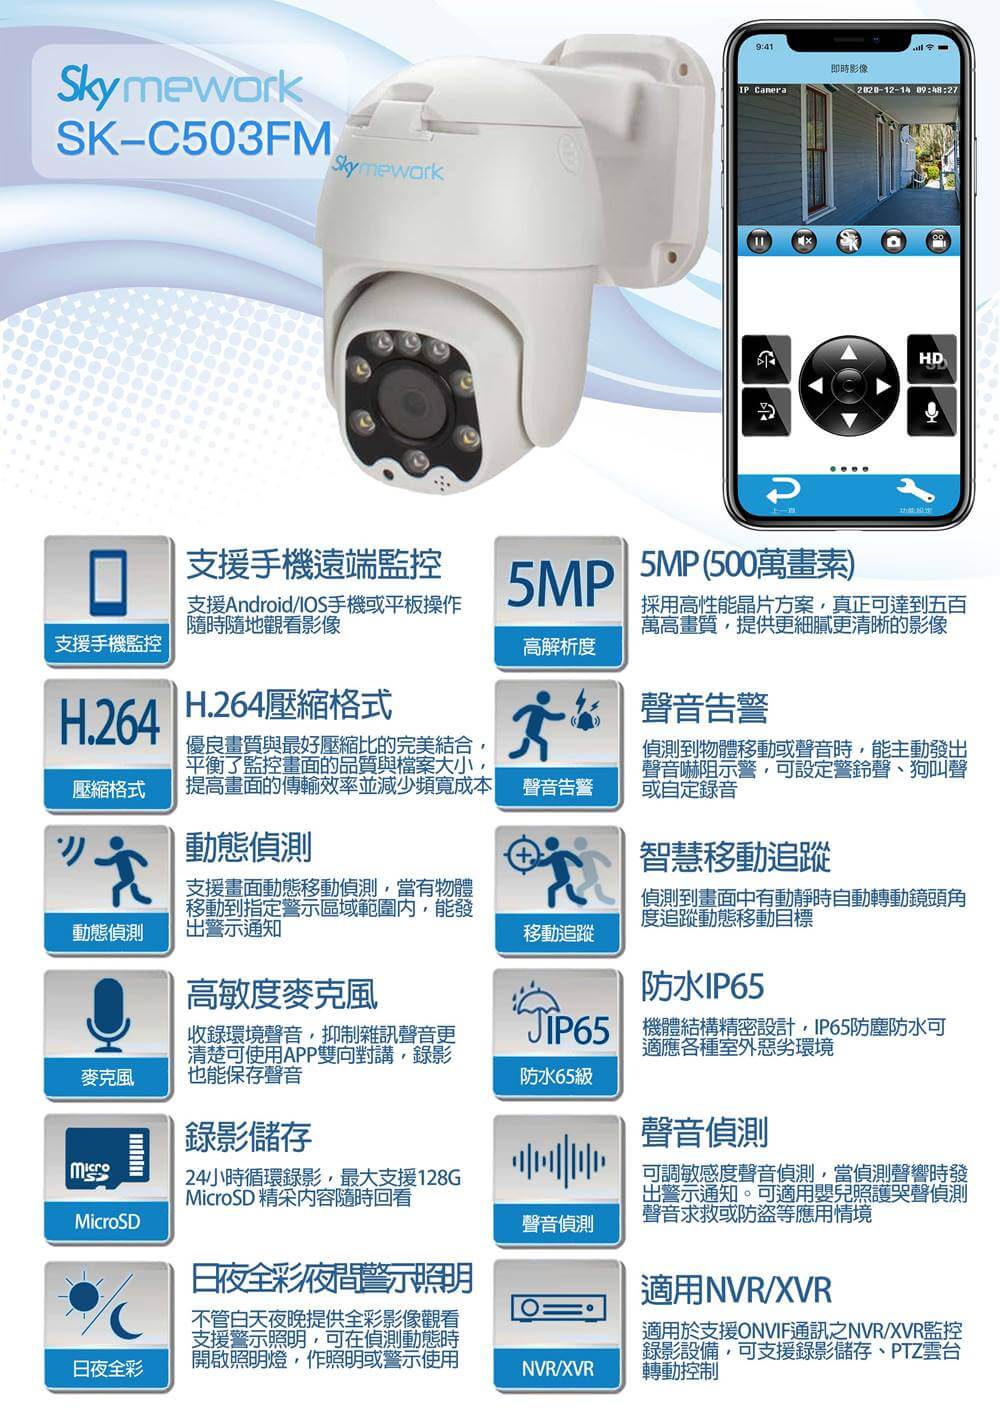 102108131211 - SK-C503FM 5MP 人形辨識 智慧跟拍 大功率雙向對講 戶外防水攝影機